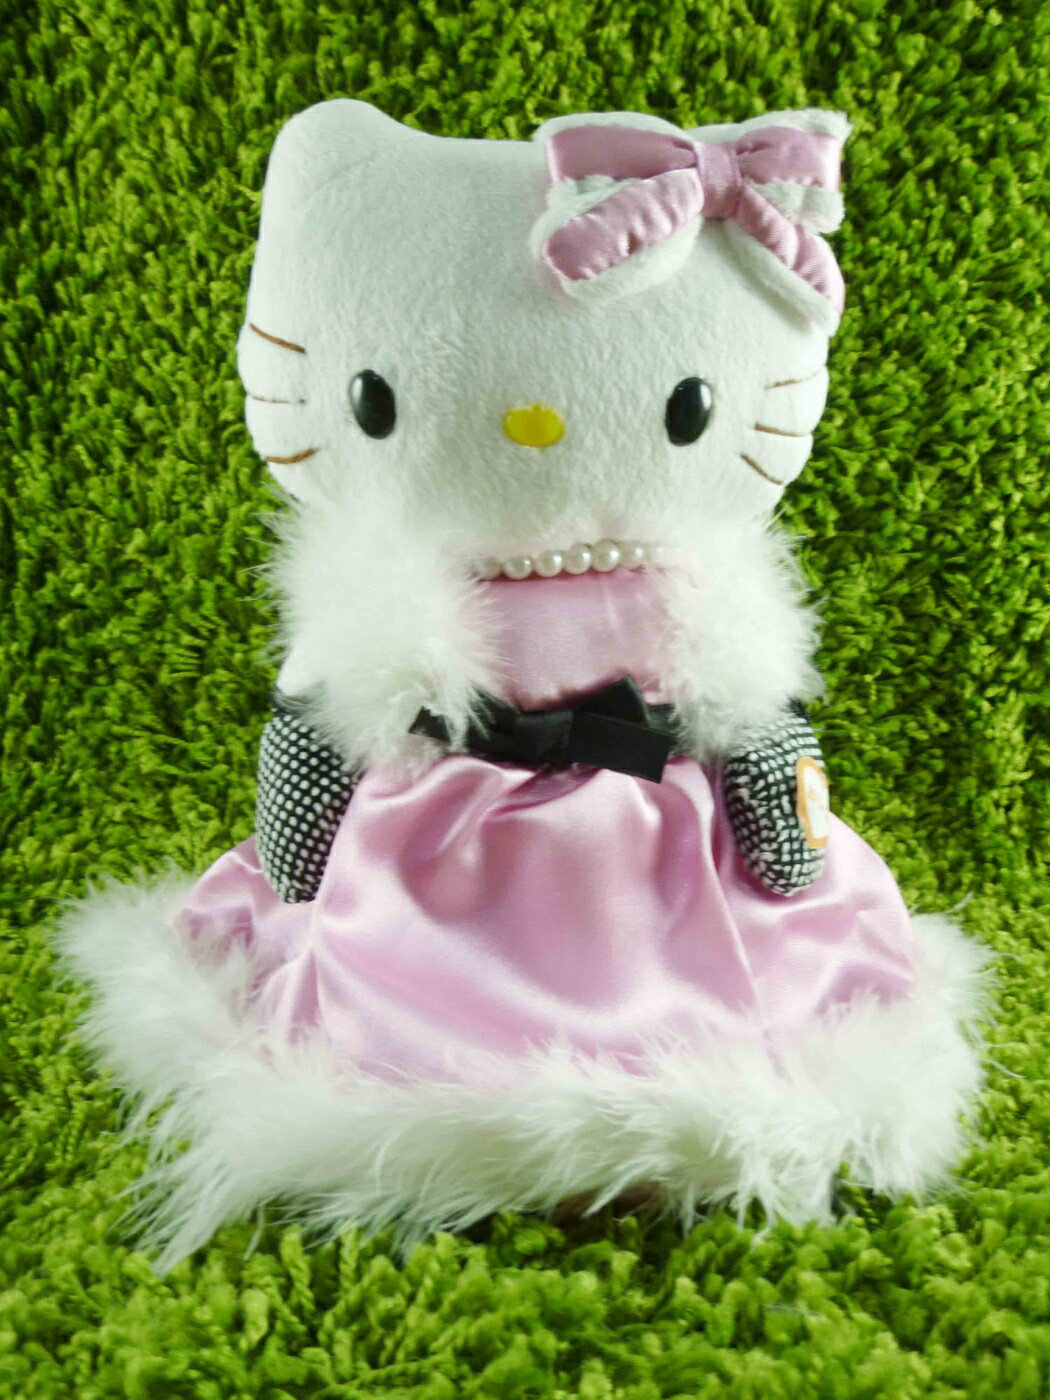 【震撼精品百貨】Hello Kitty 凱蒂貓 KITTY絨毛娃娃-貴族圖案-粉色 震撼日式精品百貨